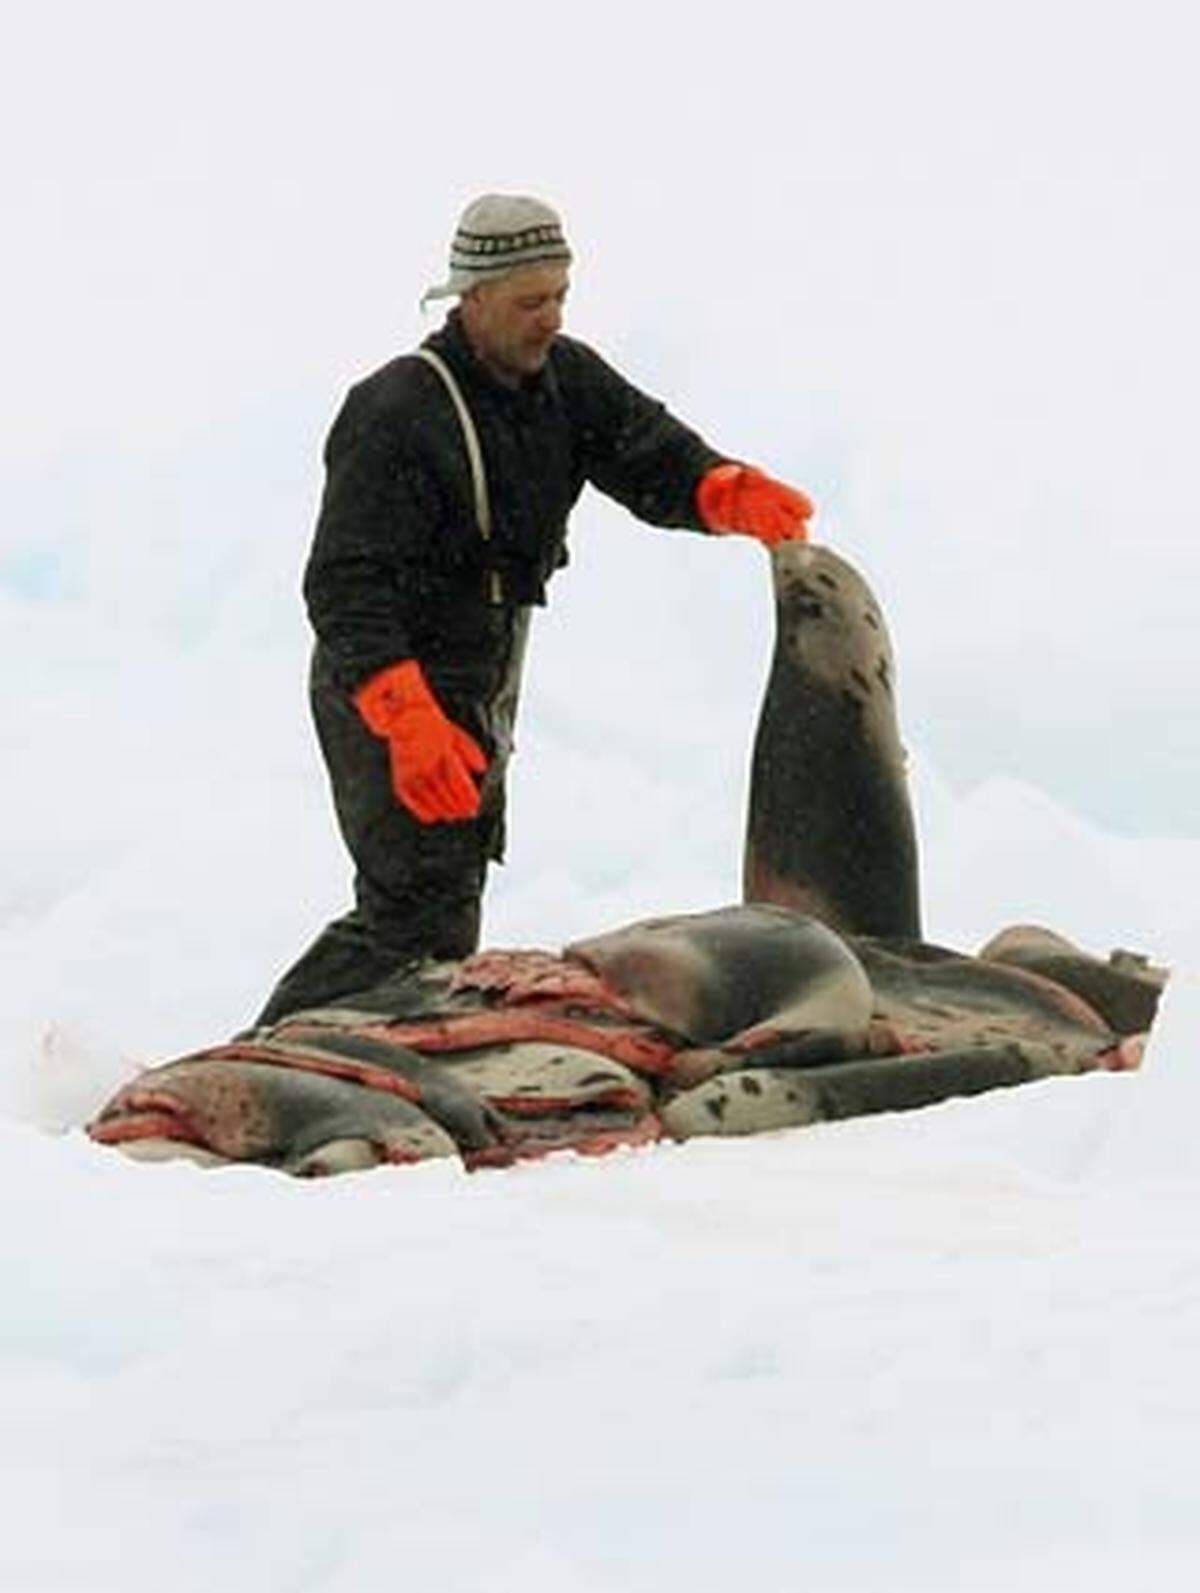 Ottawa hatte den kommerziellen Robbenfang 1987 verboten, jedoch 1995 unter Auflagen wieder zugelassen.